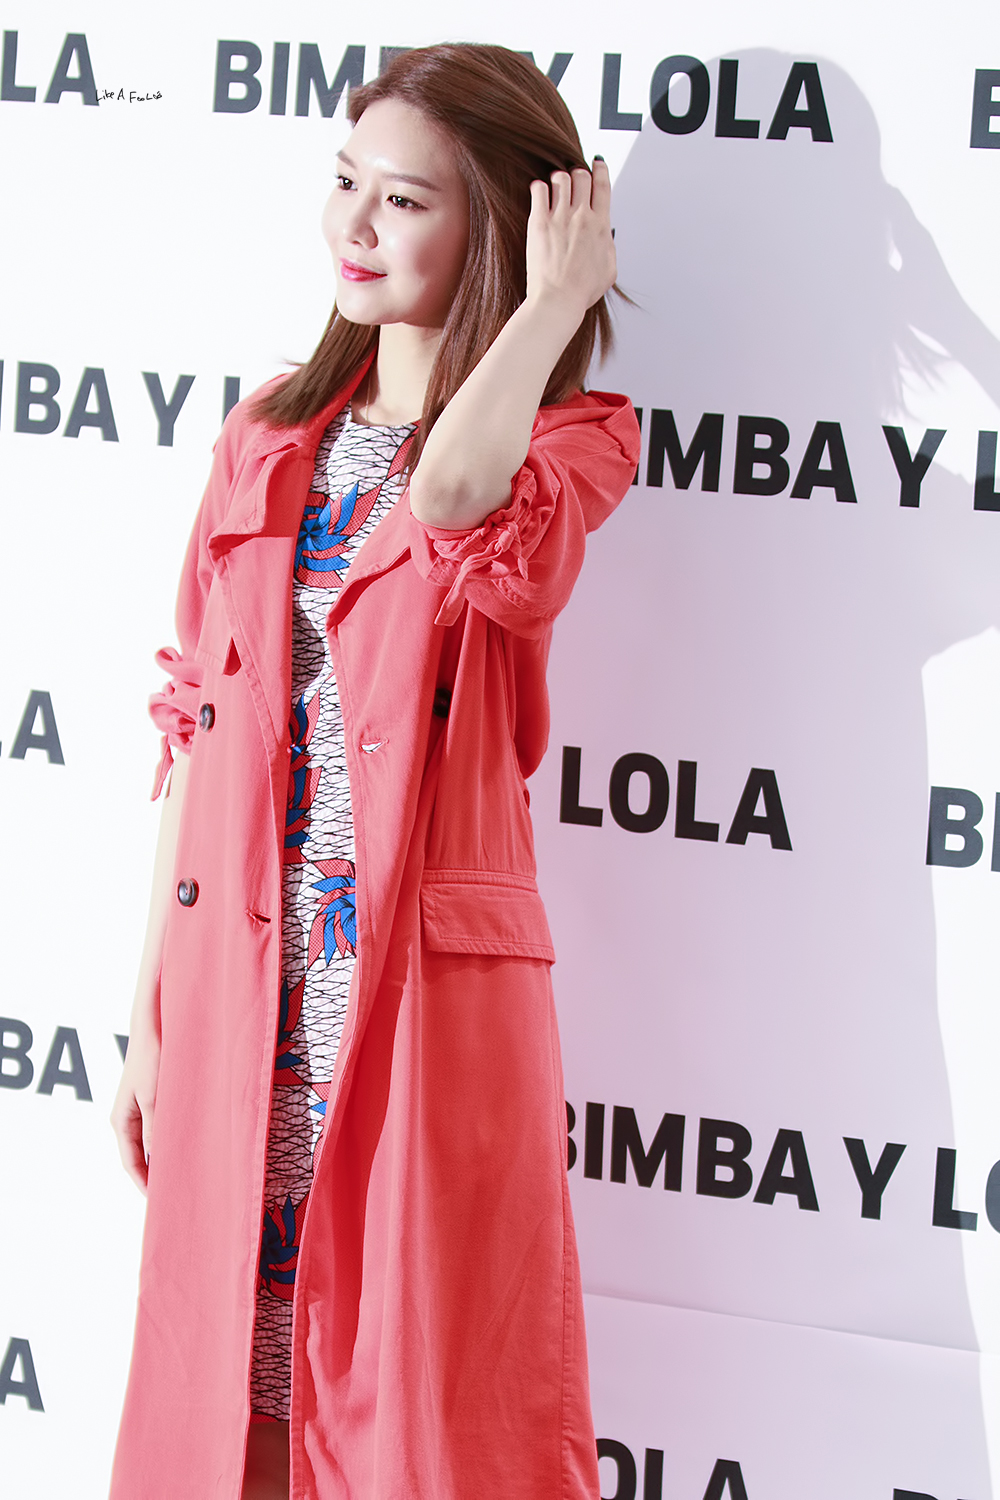 [PIC][14-04-2017]SooYoung tham dự buổi Fansign thứ 2 cho thương hiệu "BIMBA Y LOLA" vào trưa nay - Page 2 2169393B58F0A7181B34CC